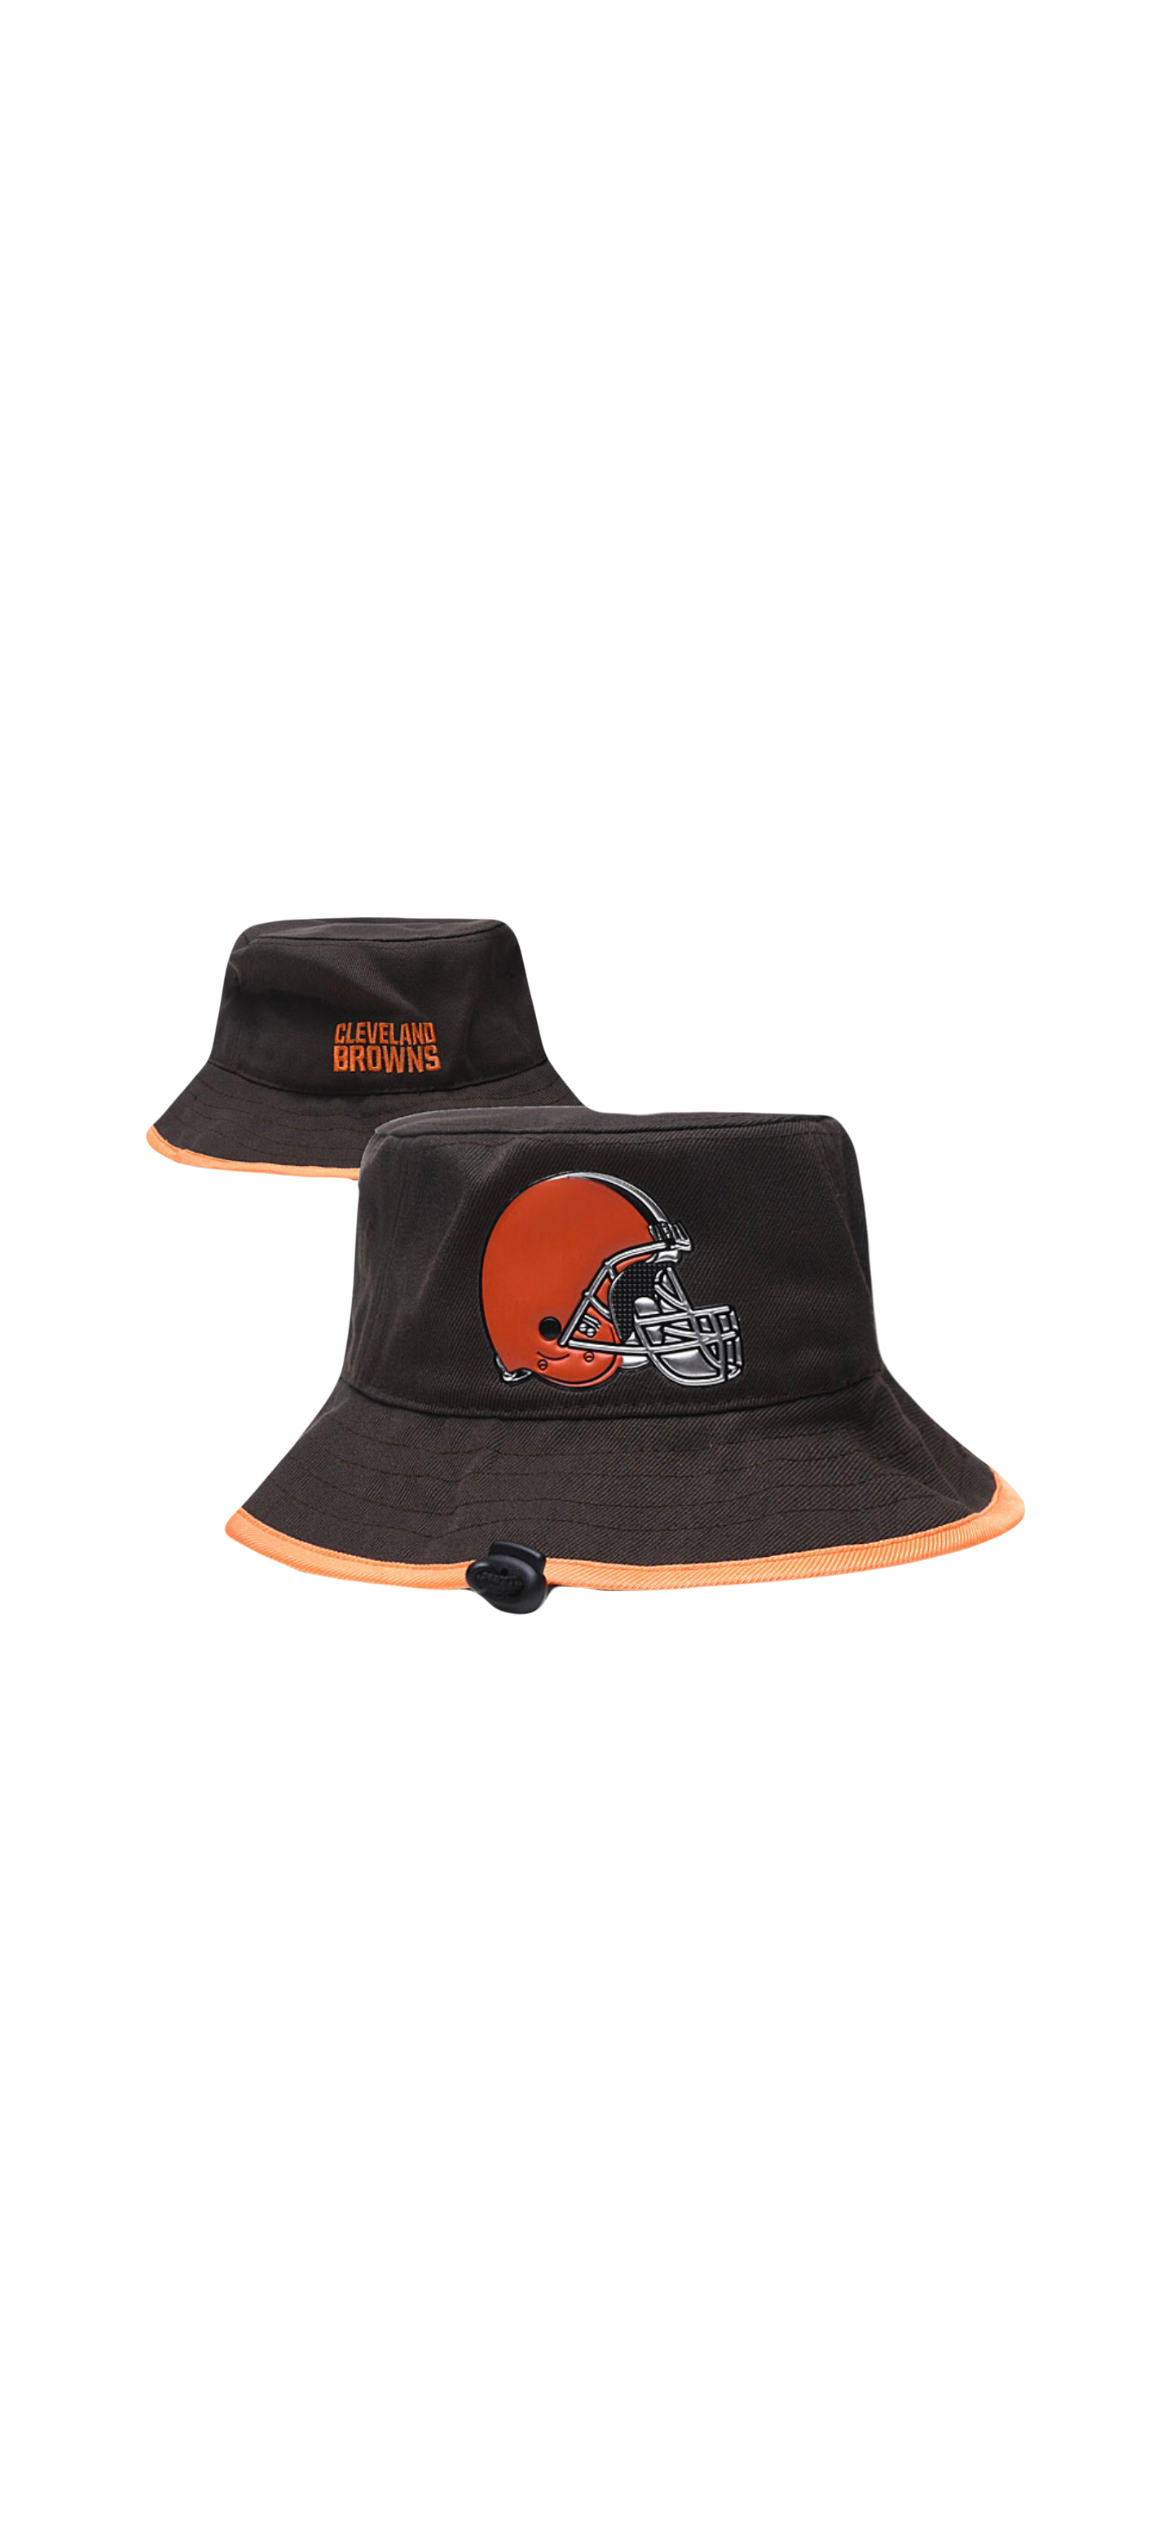 Cleveland Browns NFL New Era Bucket Hat – Lista's Locker Room